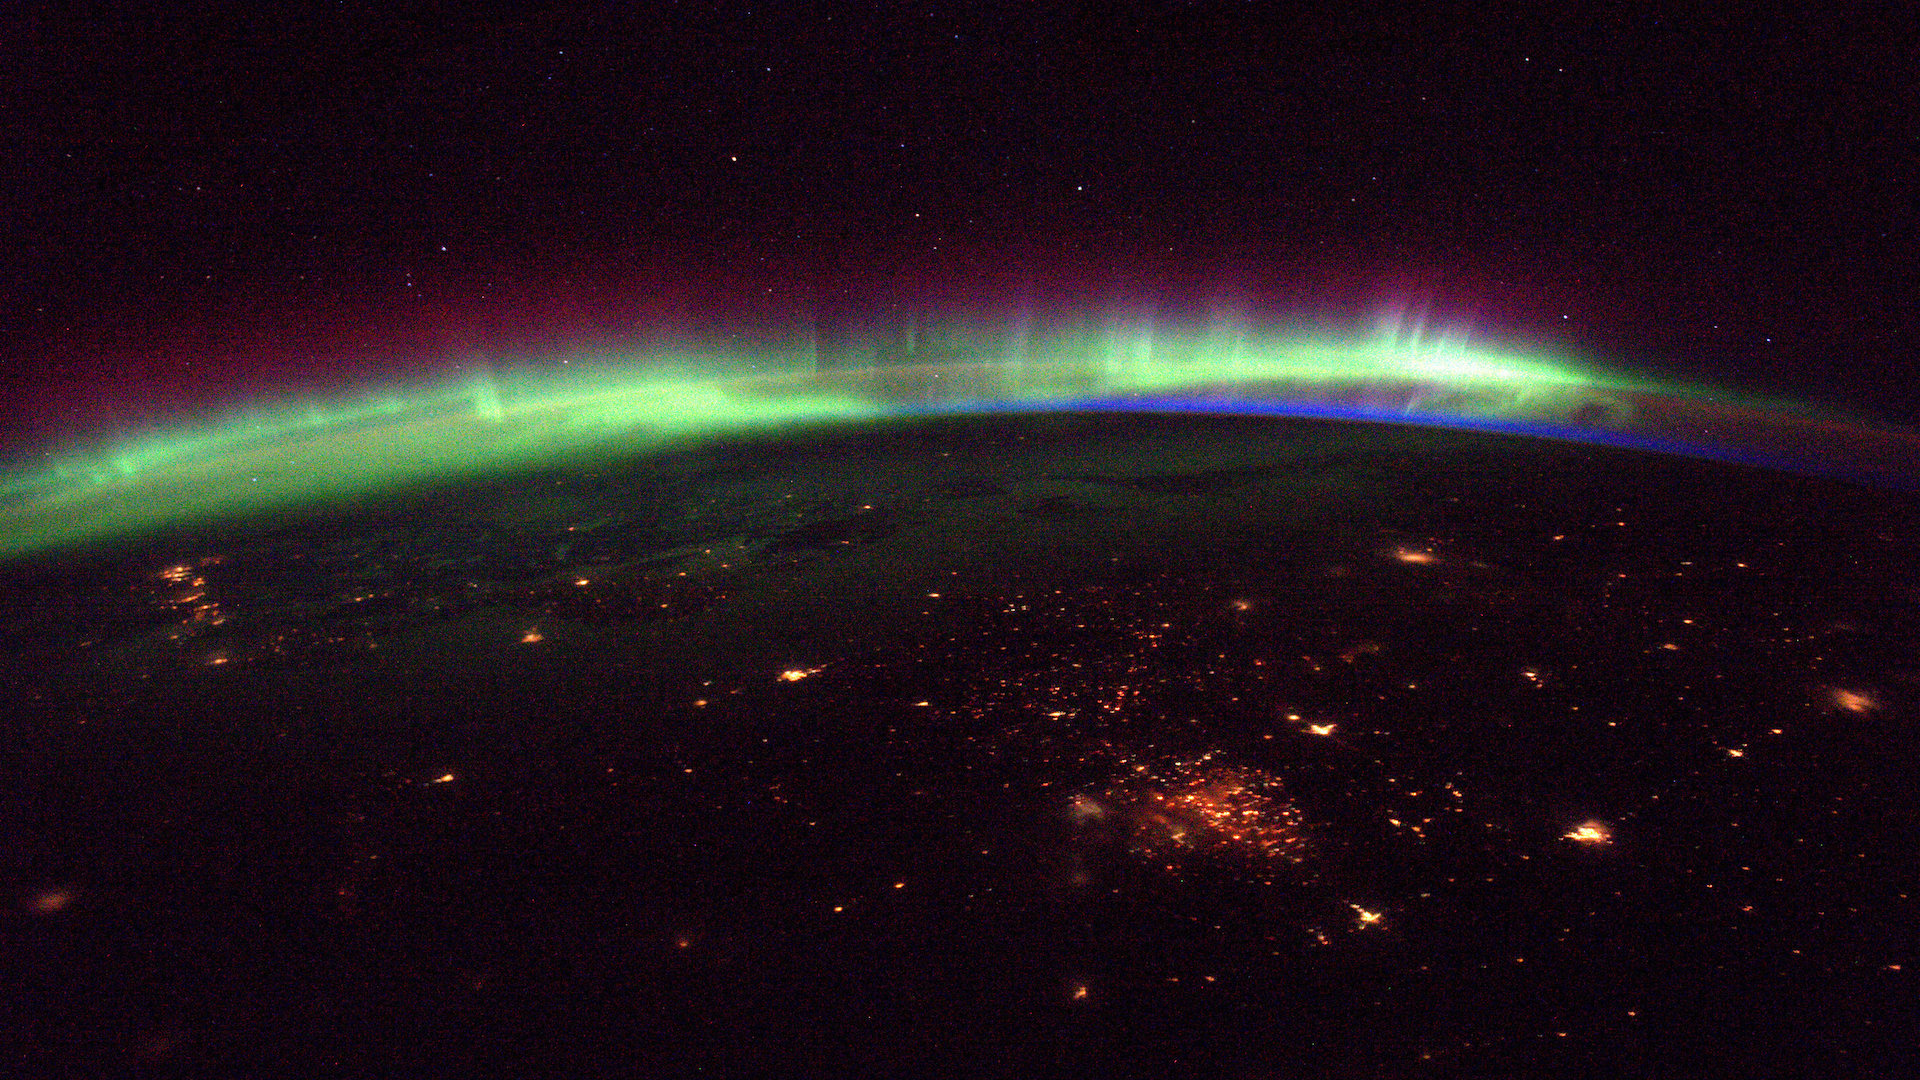 Фотография зеленого, синего и фиолетового сияния над горизонтом земли с красноватыми огнями города на переднем плане.